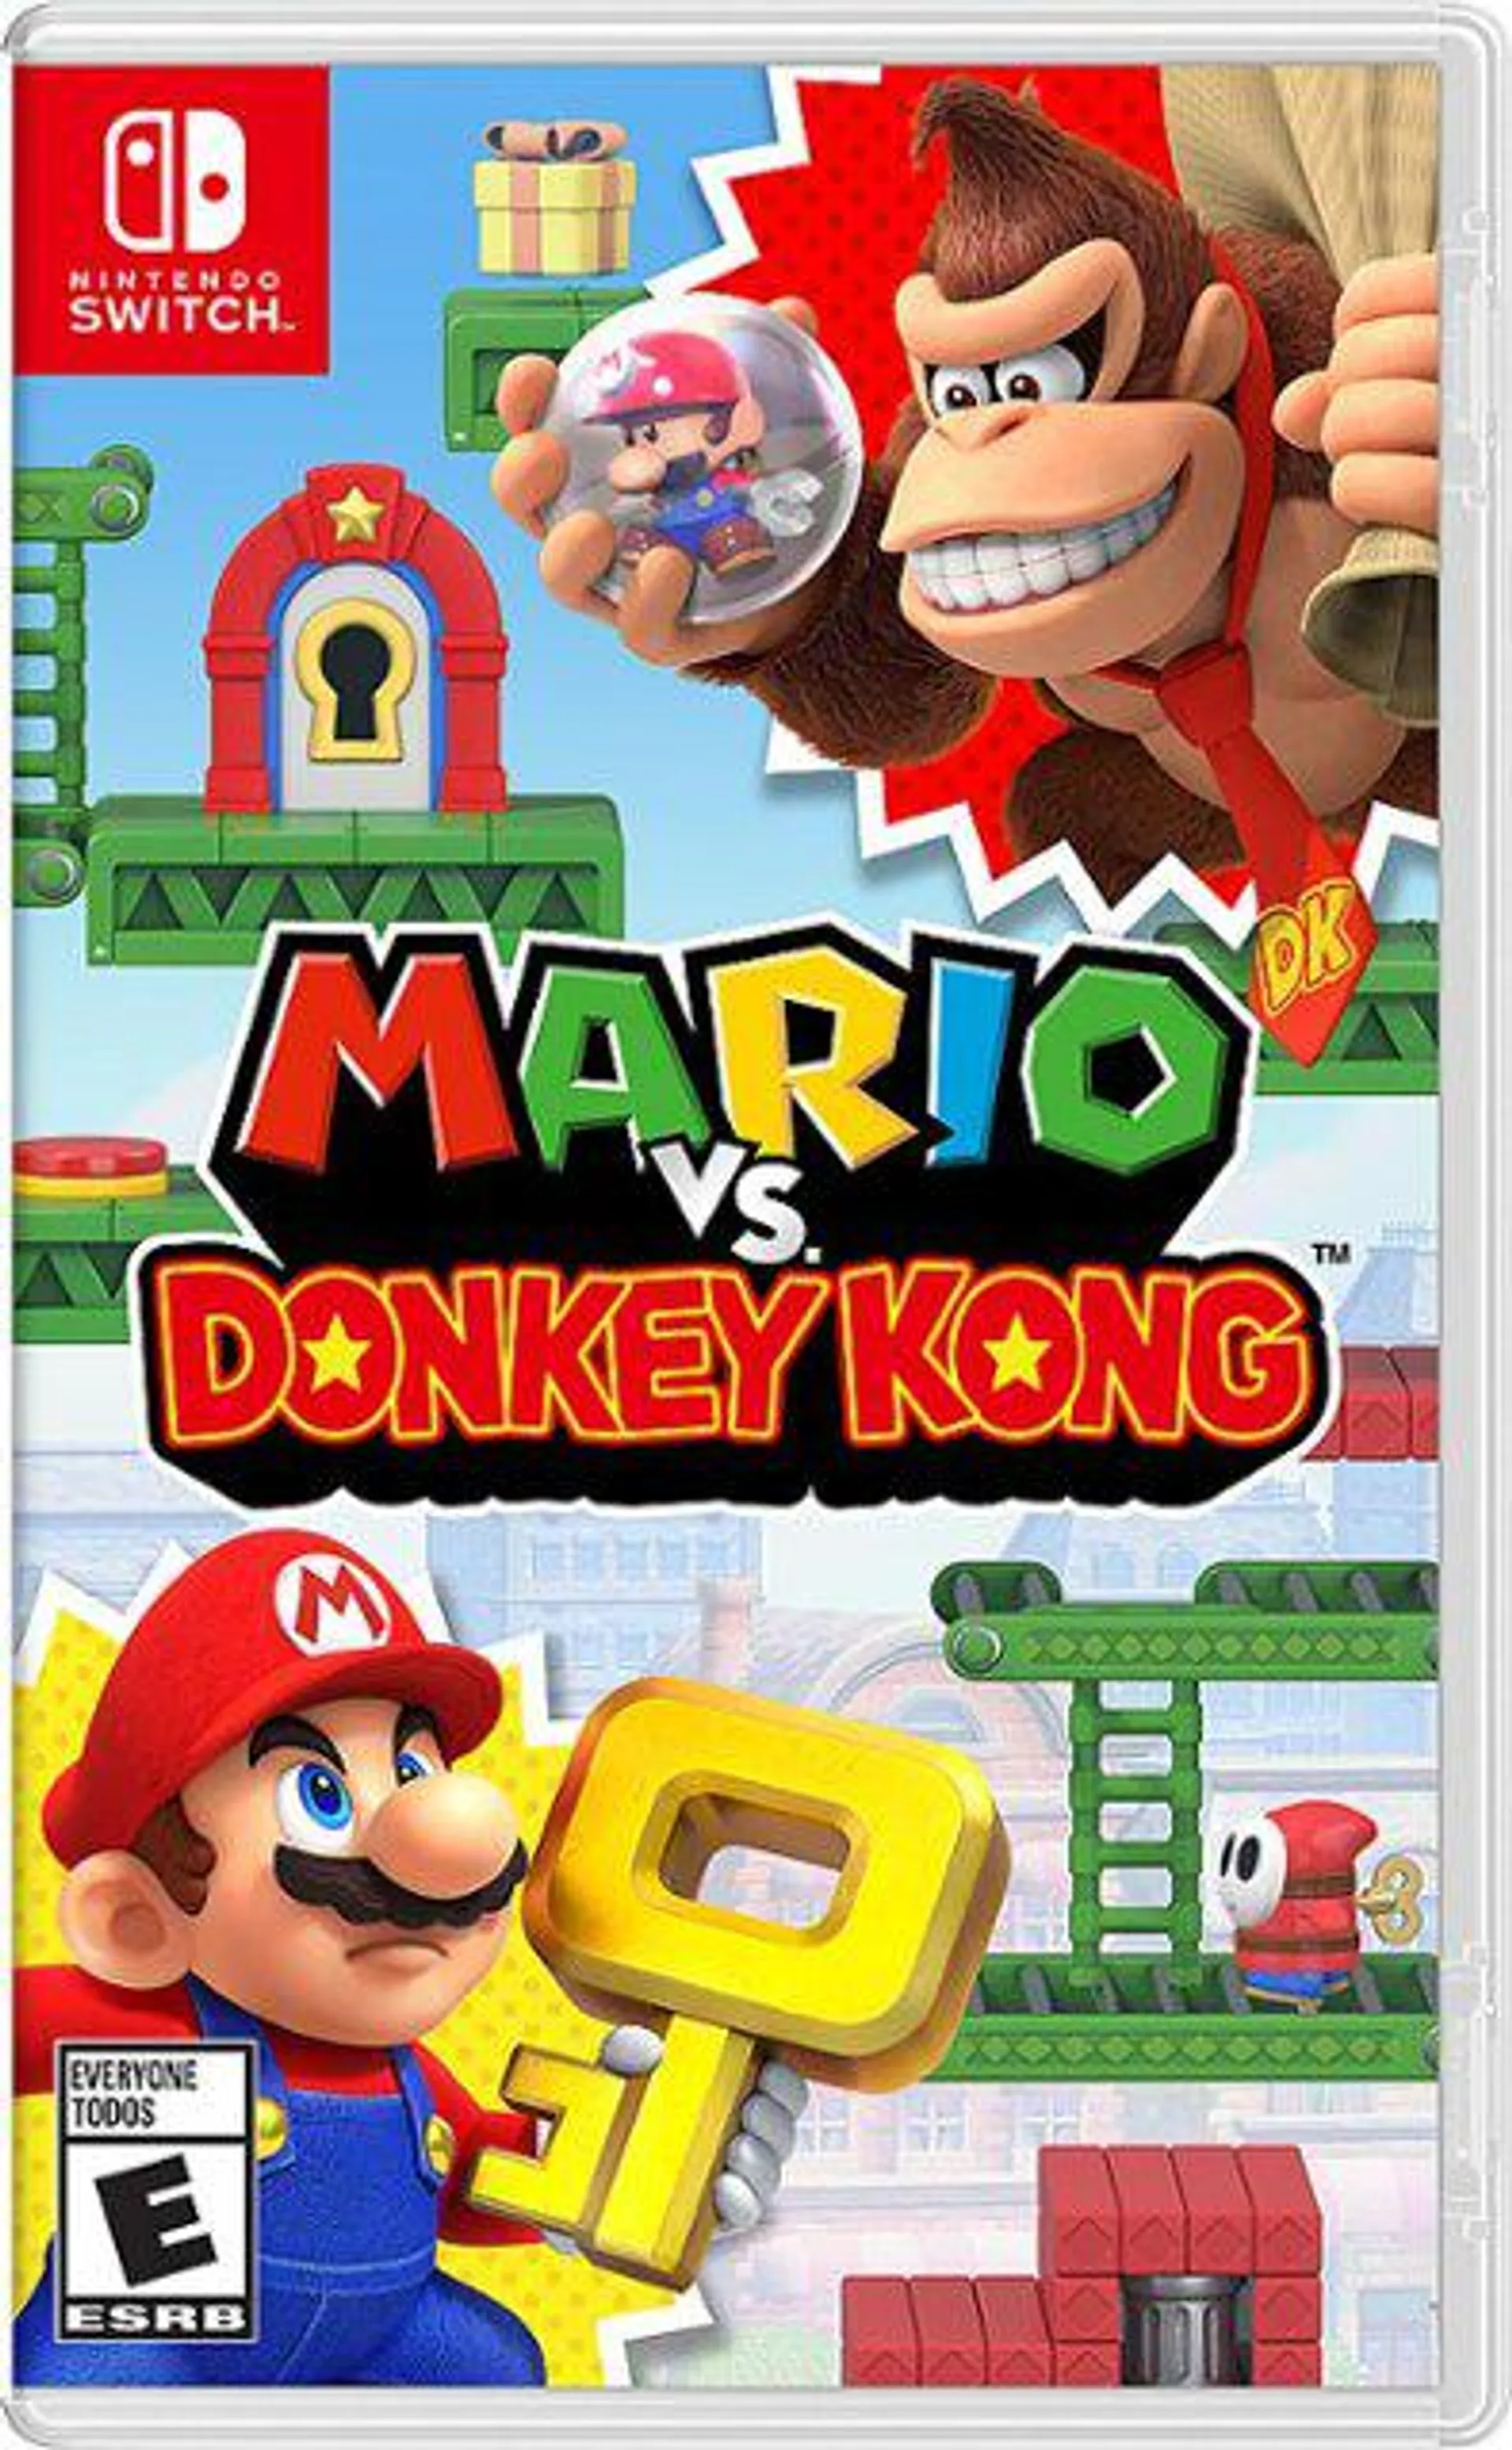 Mario Vs. Donkey Kong - Nintendo Switch – OLED Model, Nintendo Switch Lite, Nintendo Switch